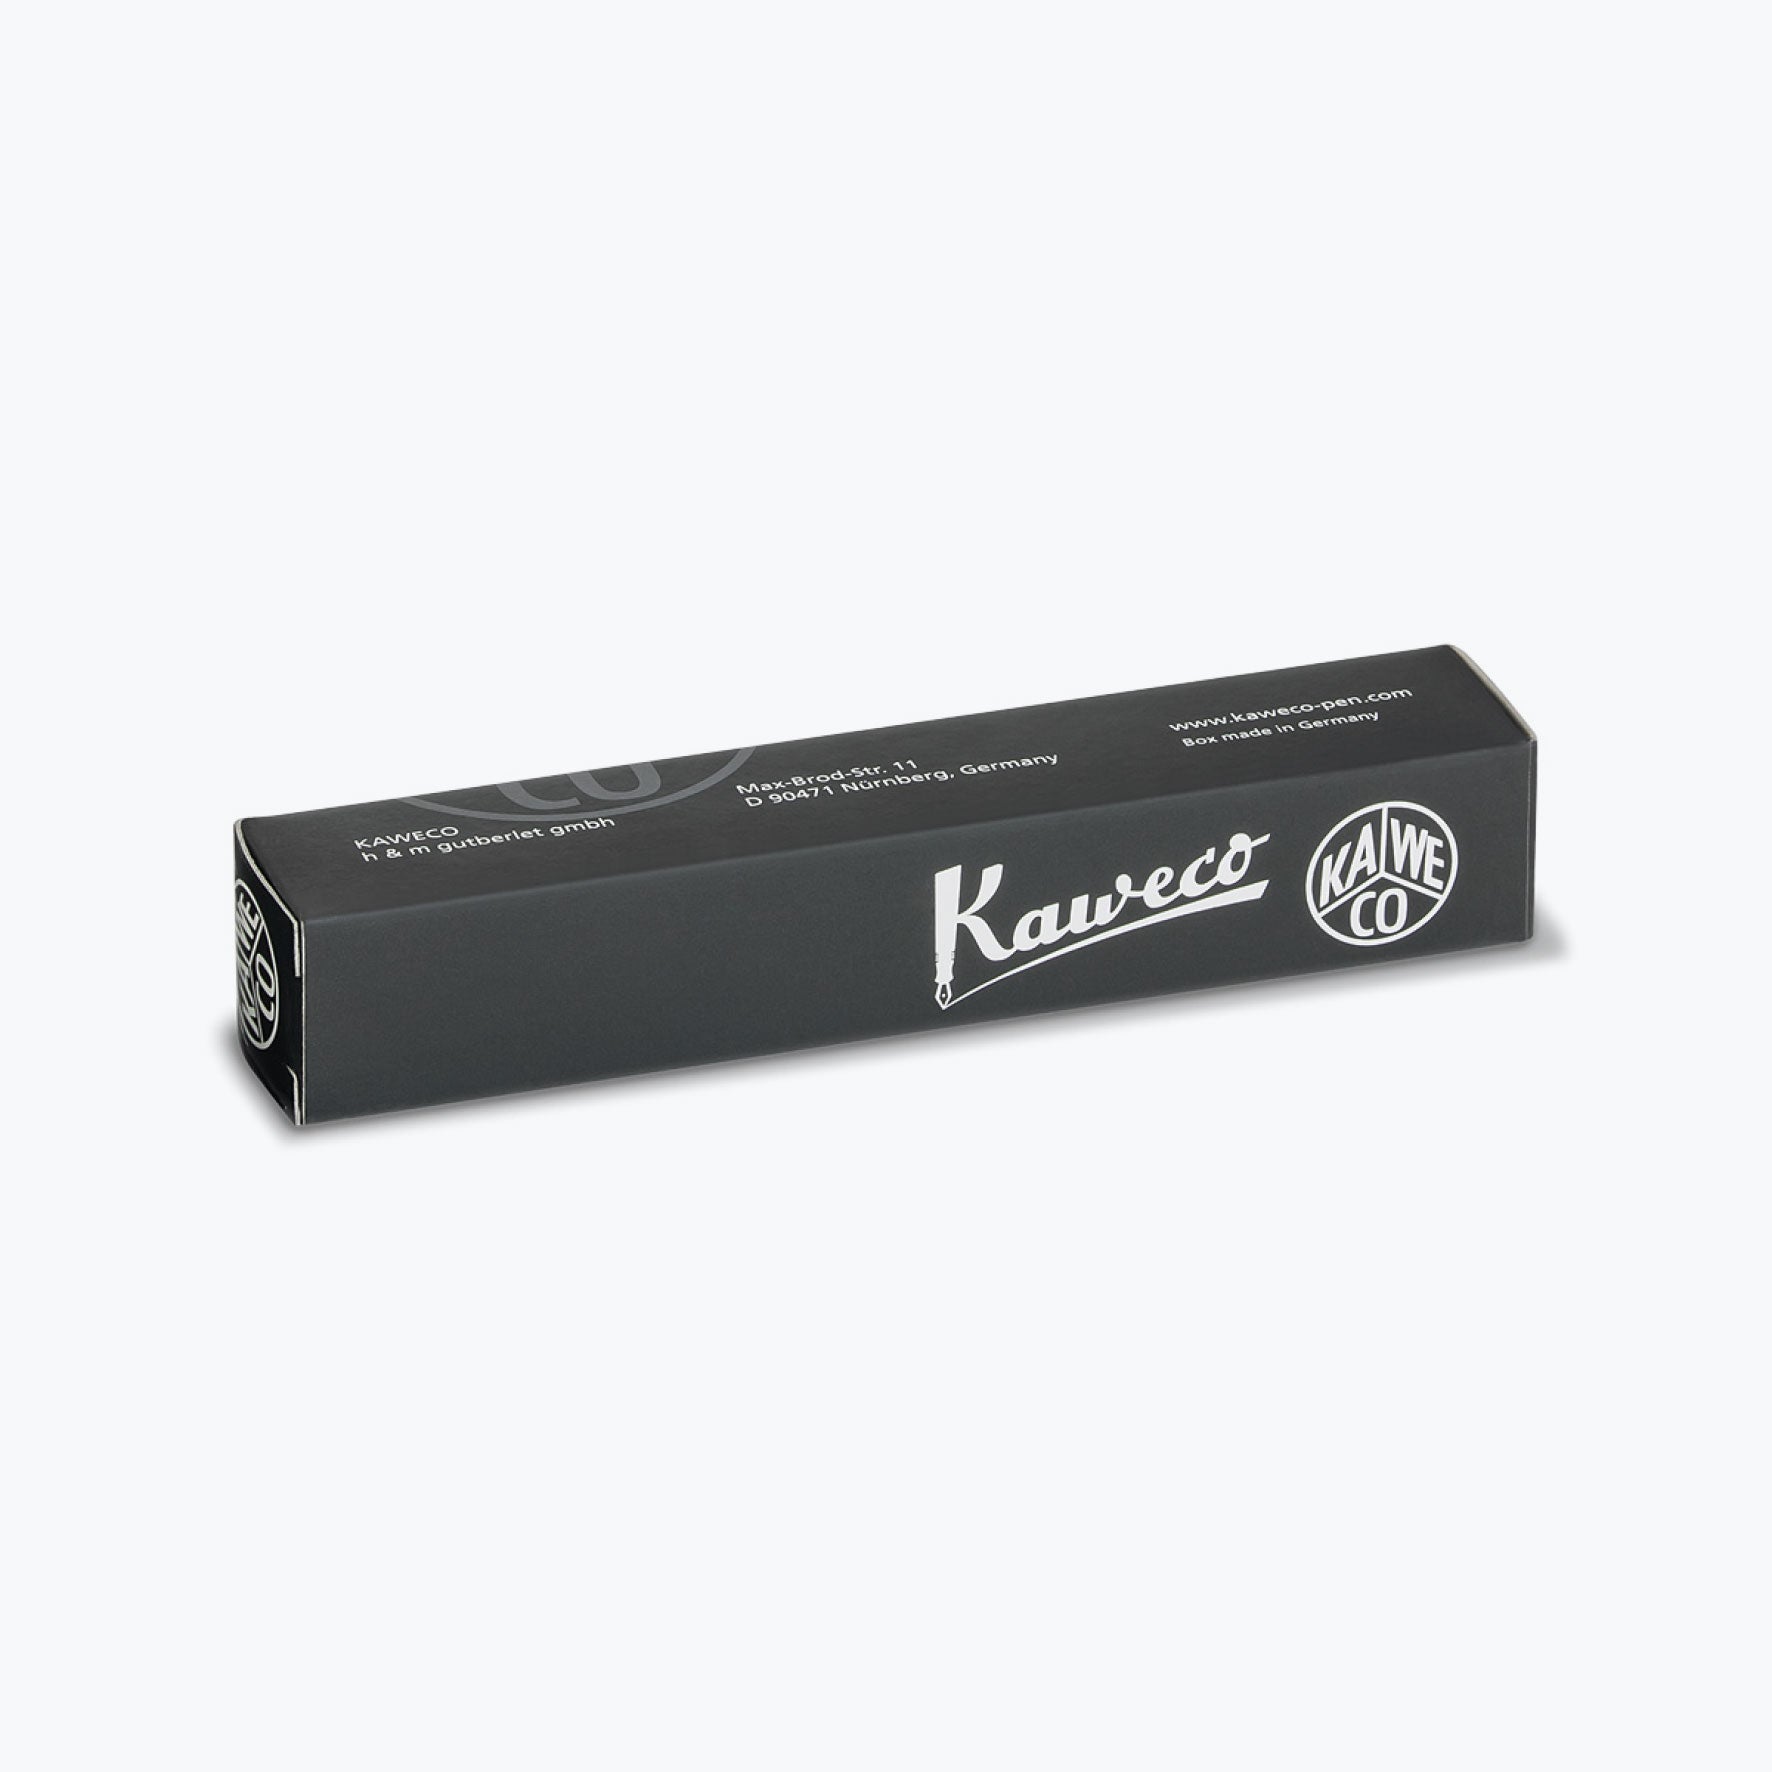 Kaweco - Rollerball Pen - Skyline Sport - Mint